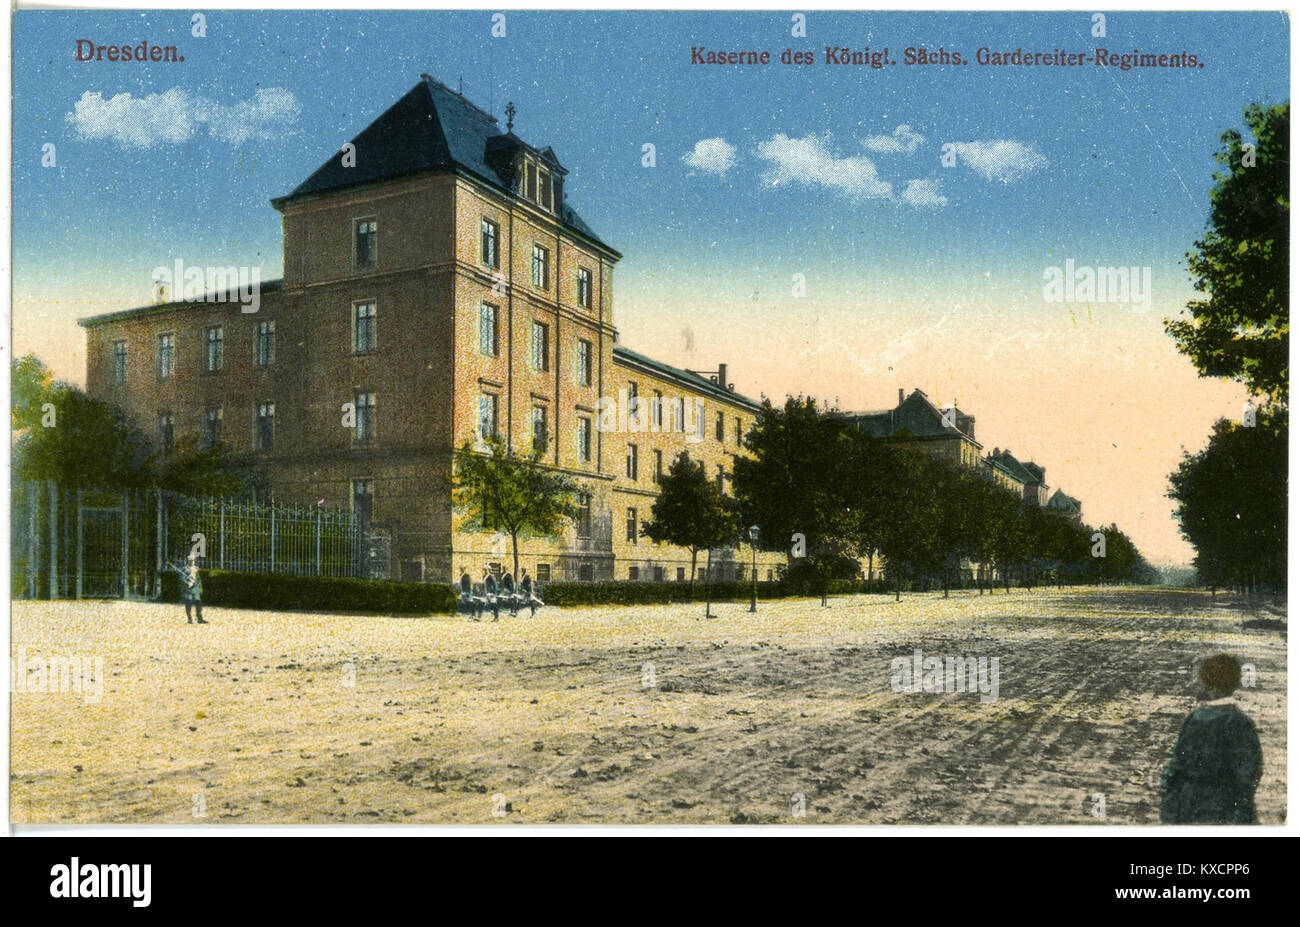 20603-Dresden-1917-Kaserne des Königlich Sächsischen Gardereiter-Regiments-Brück & Sohn Kunstverlag Stock Photo